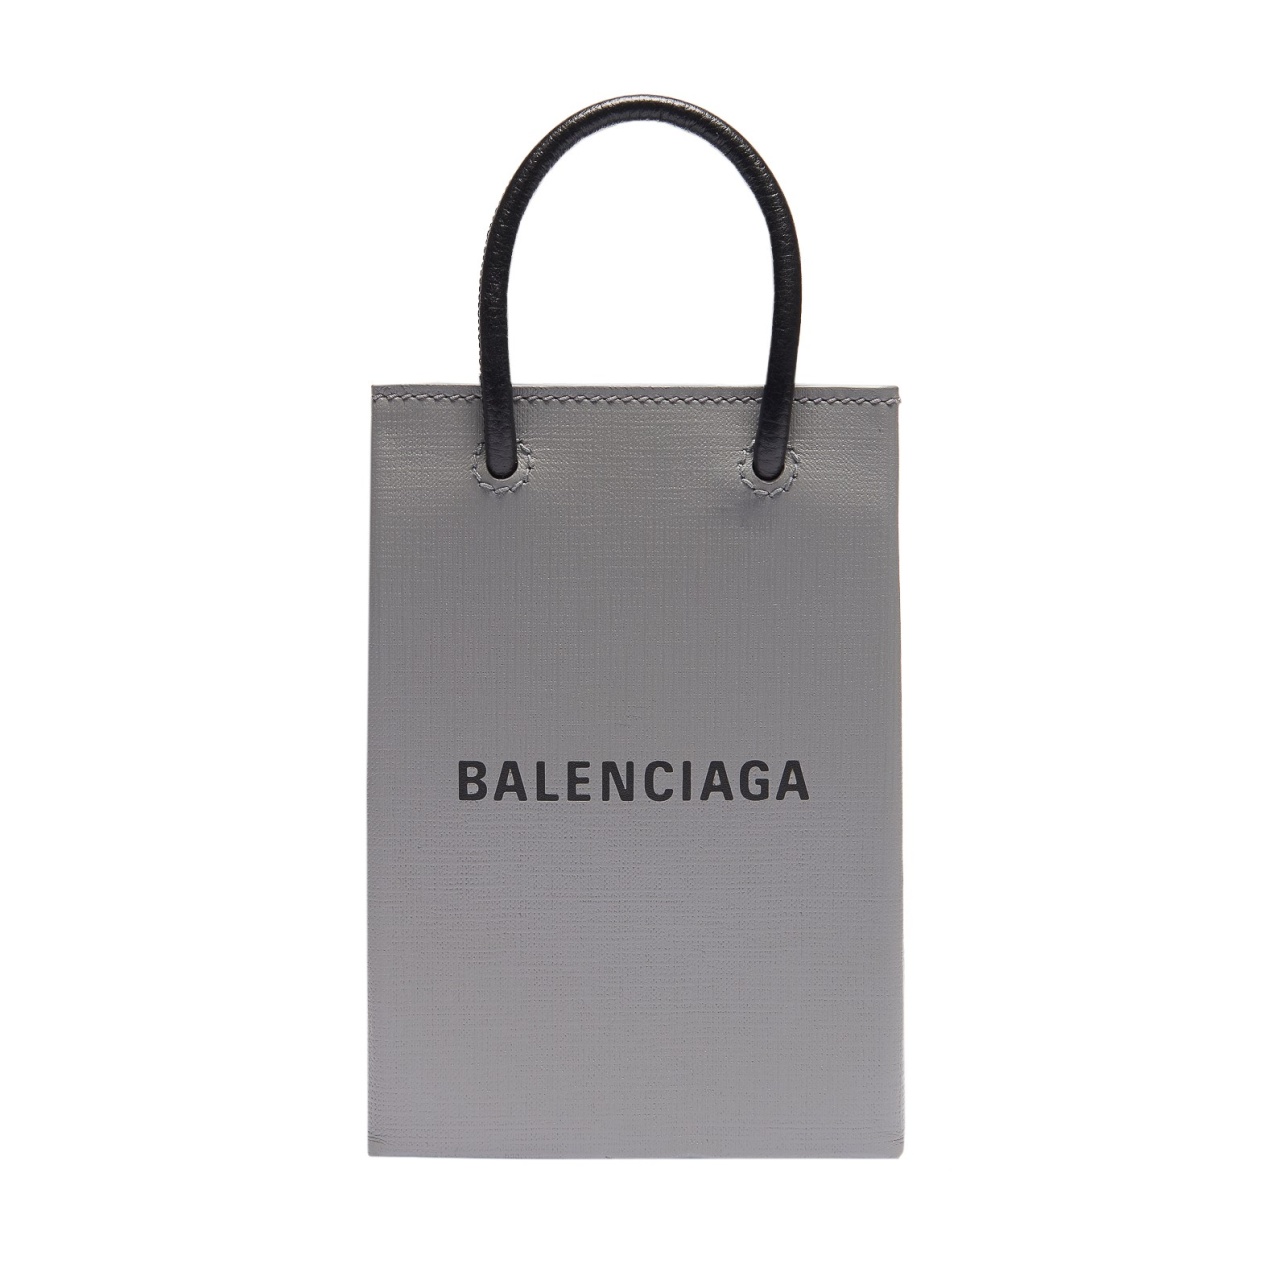 来月まで✨️  BALENCIAGA ショッピング フォンホルダー バッグ